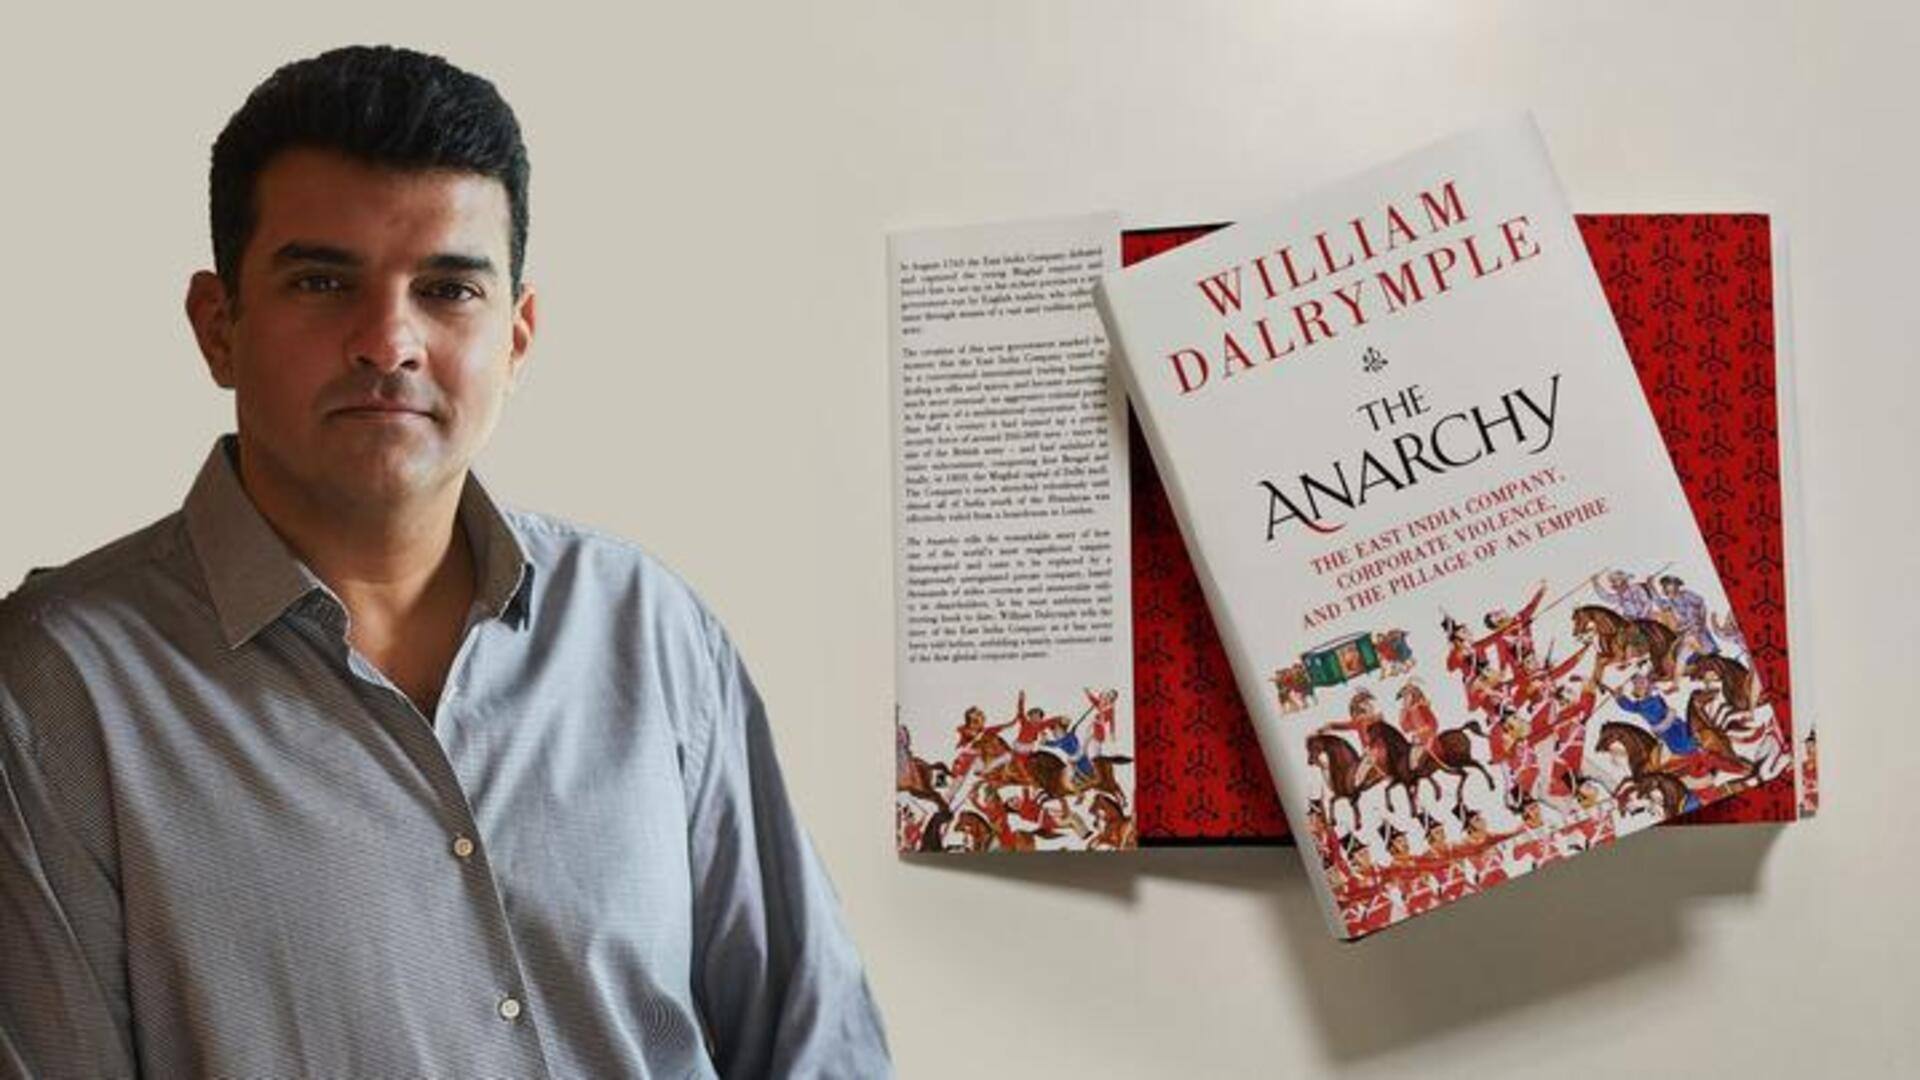 सिद्धार्थ रॉय कपूर बना रहे हैं विलियम डेलरिम्पल की किताब 'द अनार्की' पर सीरीज